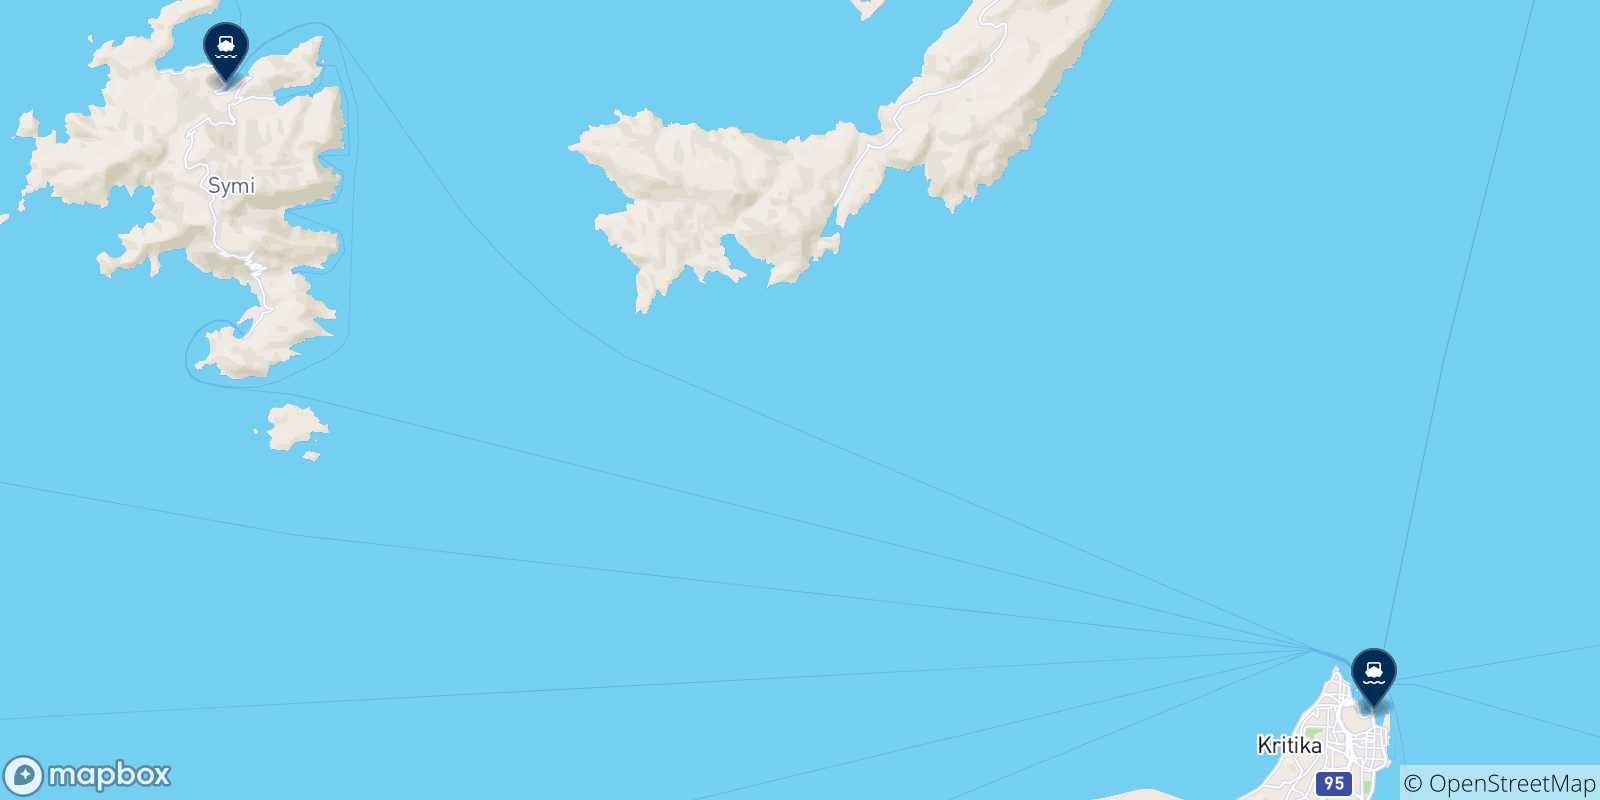 Mappa delle possibili rotte tra Datca e le Isole Dodecaneso